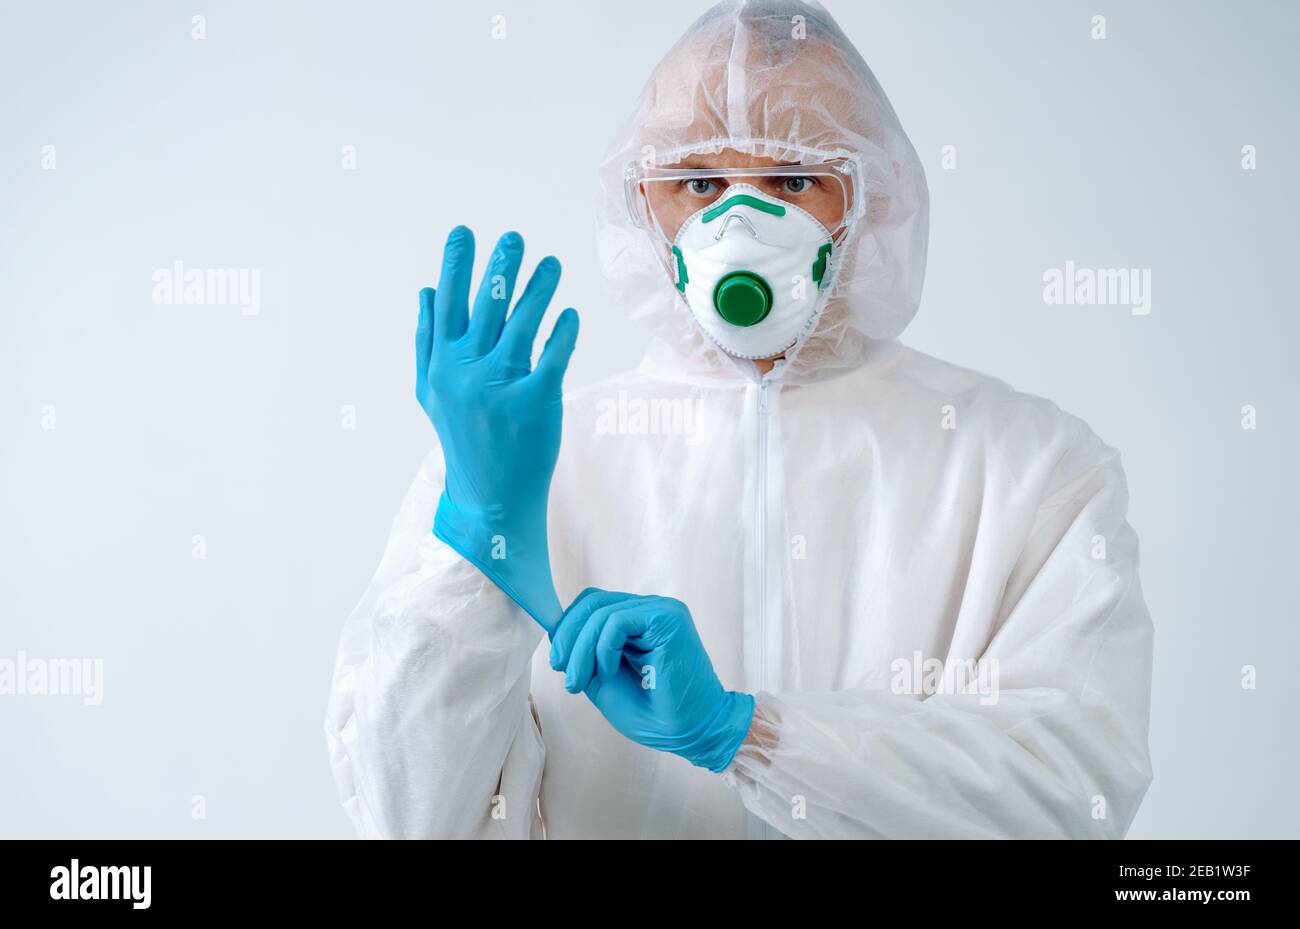 Le professionnel de la santé en costume de protection et masque médical met des gants. Concept de soins de santé. Banque D'Images